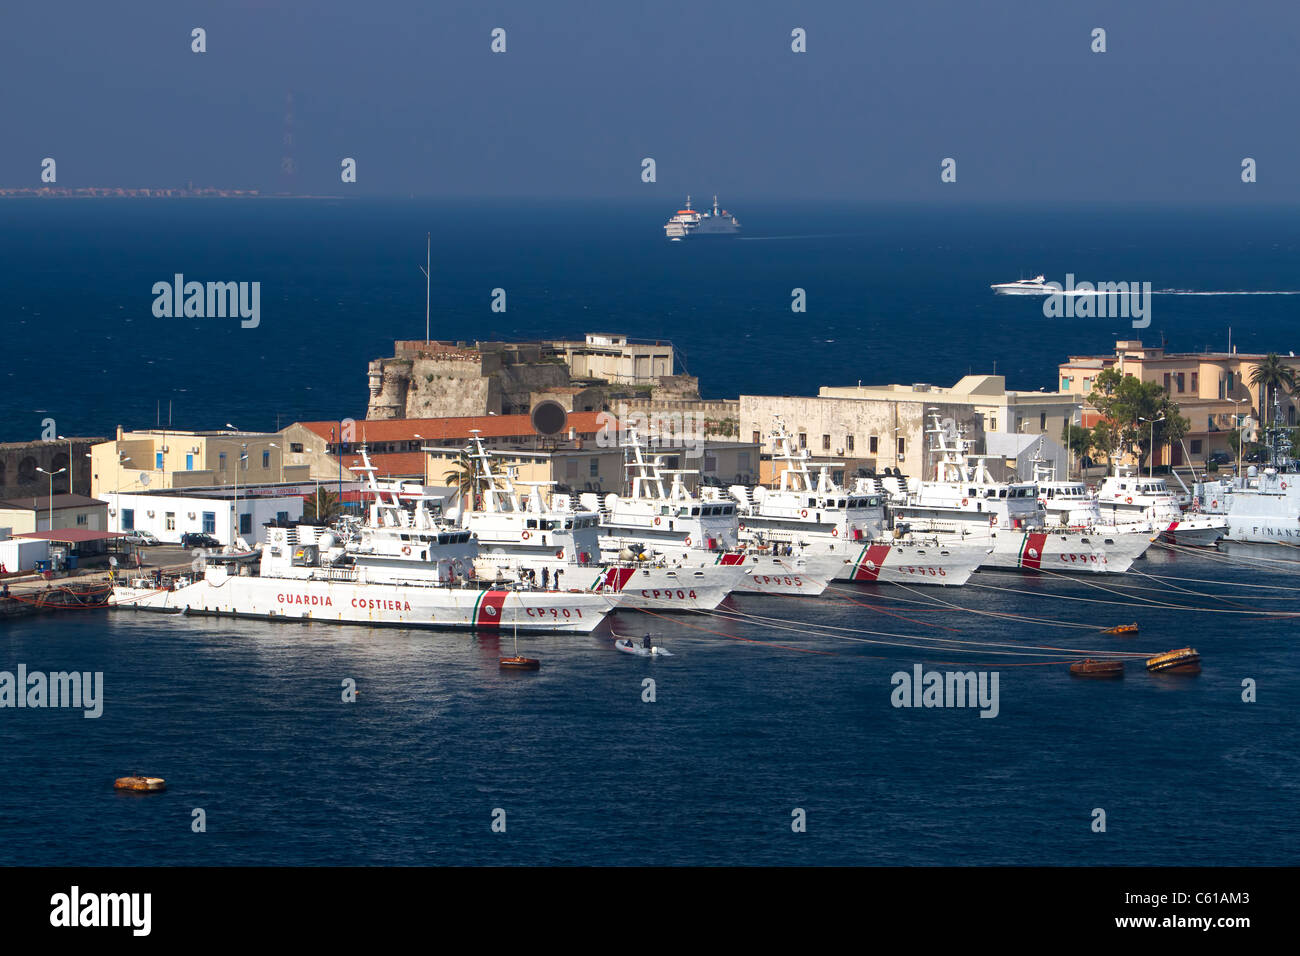 Marina Militare Italiana Guardia costiera navi in porto a Messina, Sicilia. Barche traghetto Crociera tra isola e Italia continentale. Foto Stock